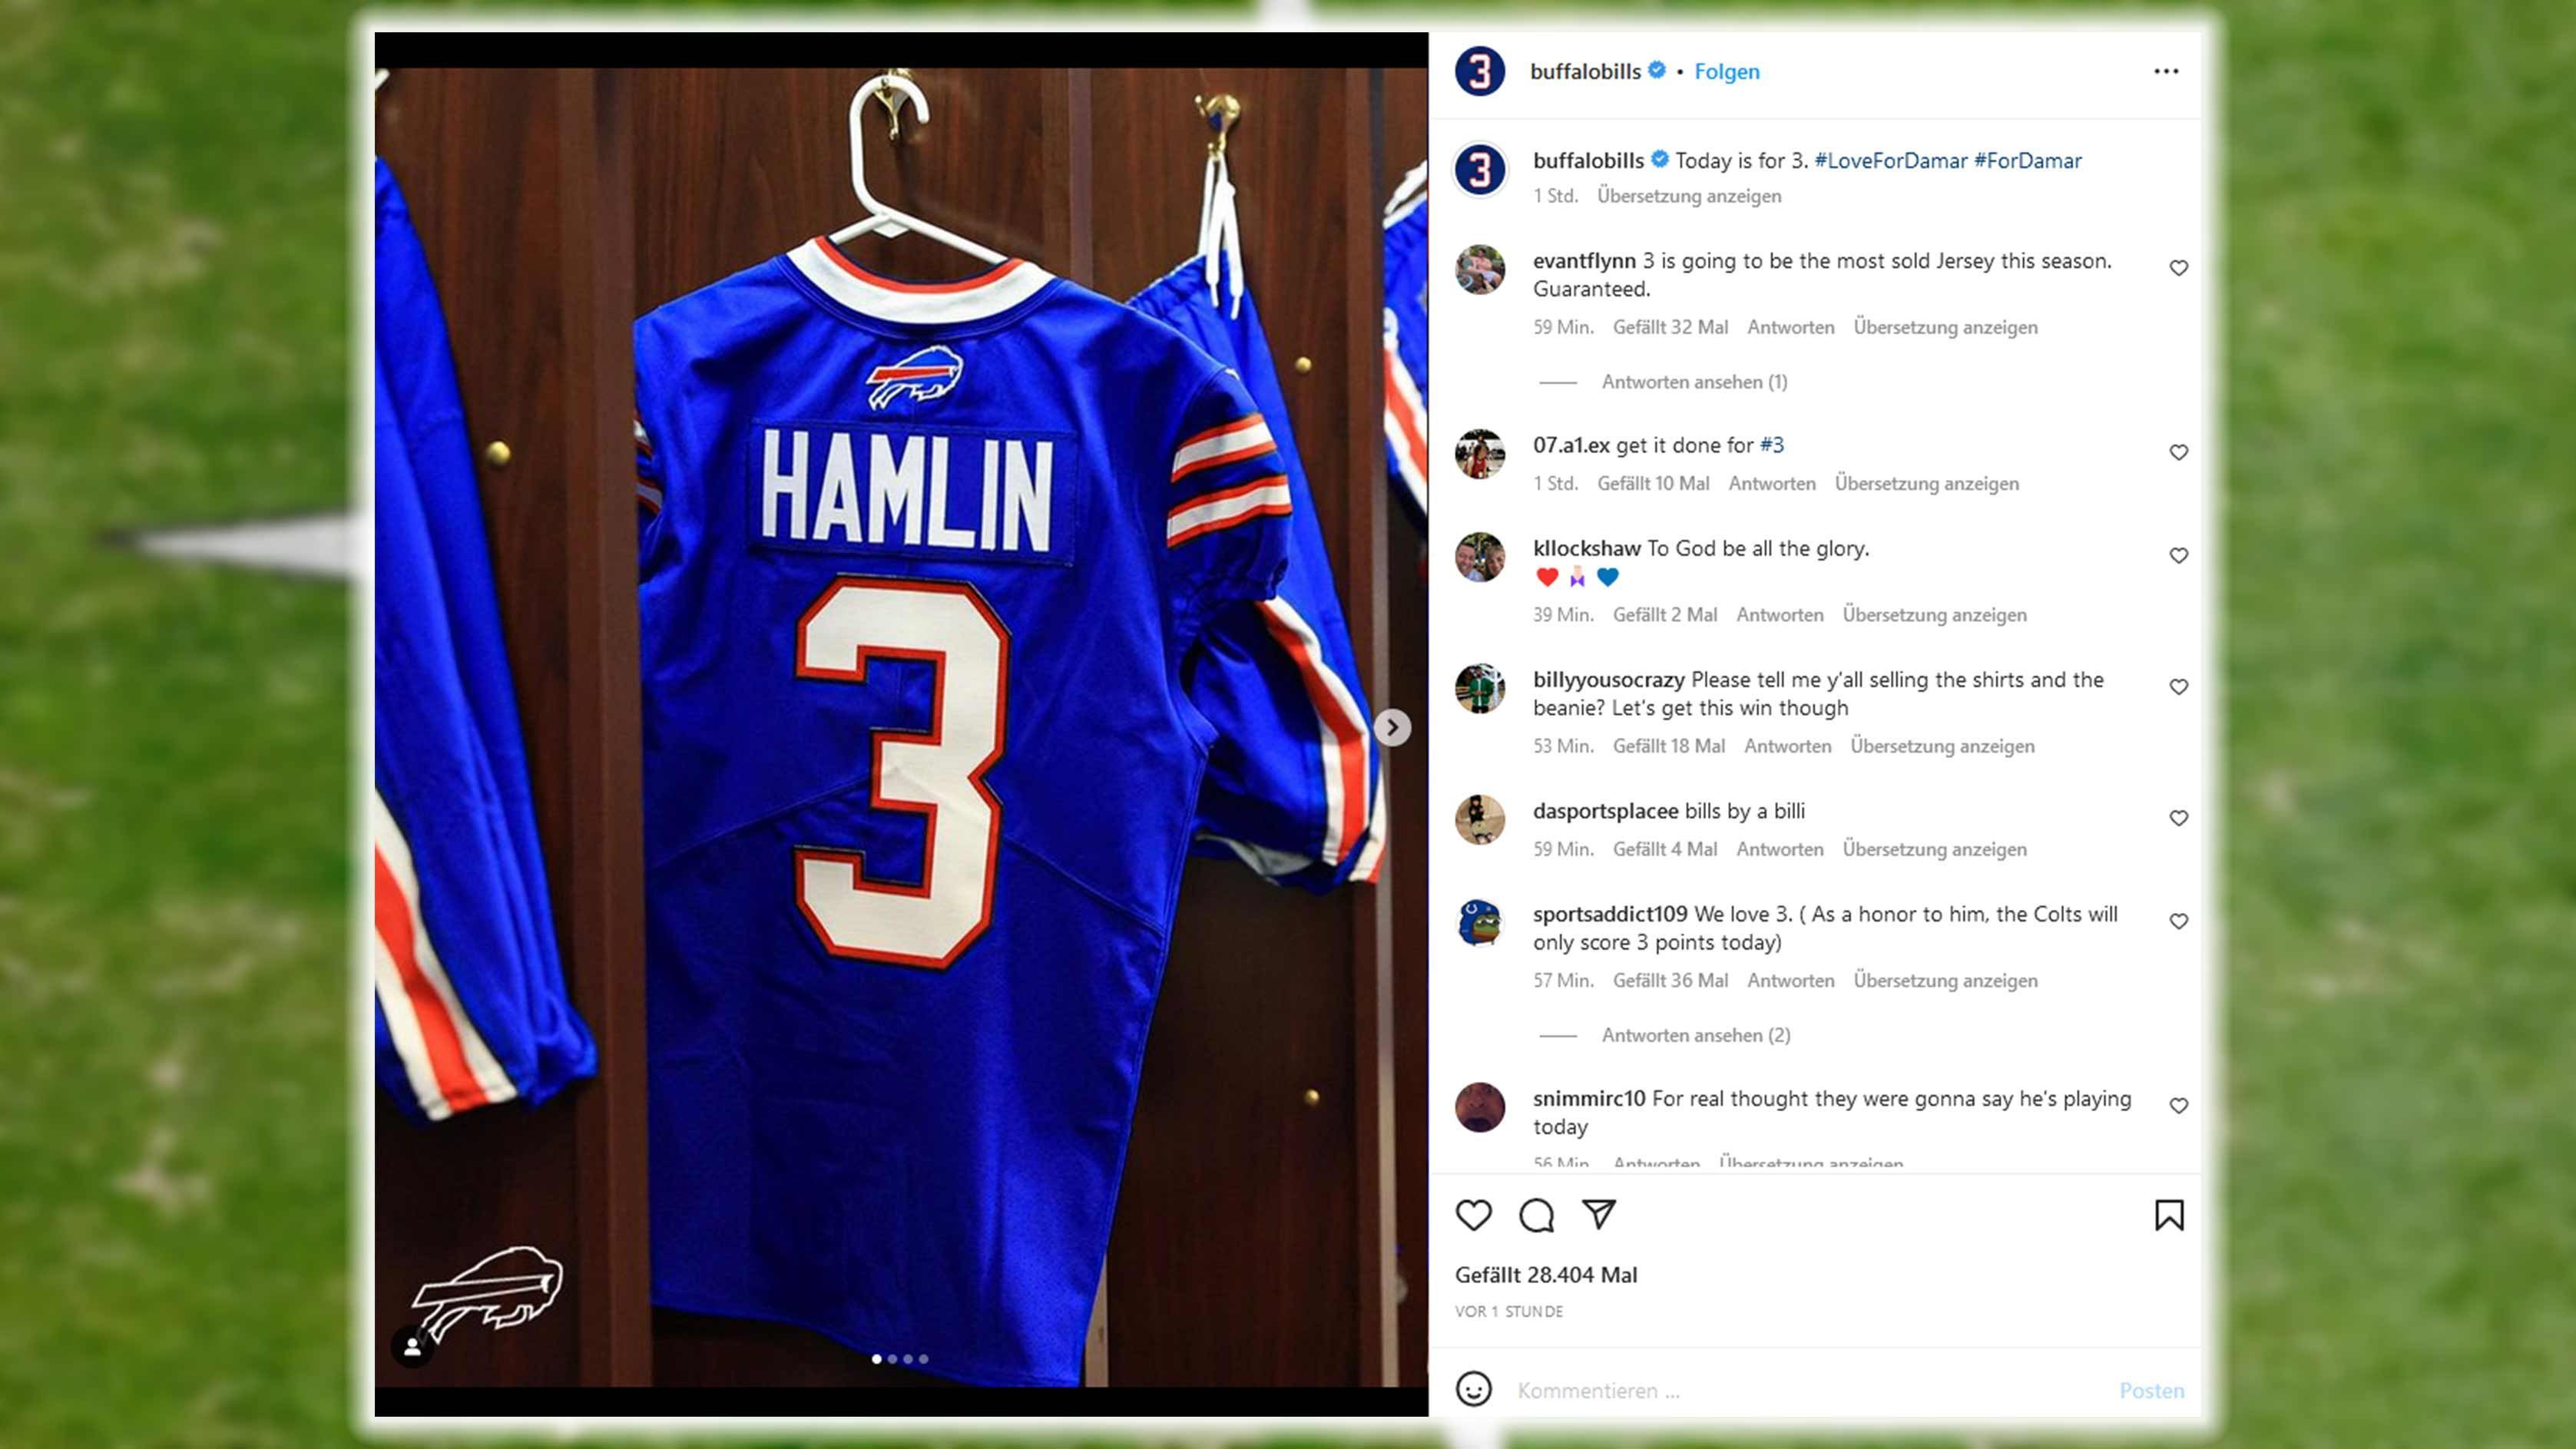 
                <strong>Buffalo Bills</strong><br>
                Vor dem Spiel der Buffalo Bills gegen die New England Patriots drehte sich alles um Bills-Safety Damar Hamlin. "Heute ist für 3", heißt es auf dem Instagram-Account des Teams.
              